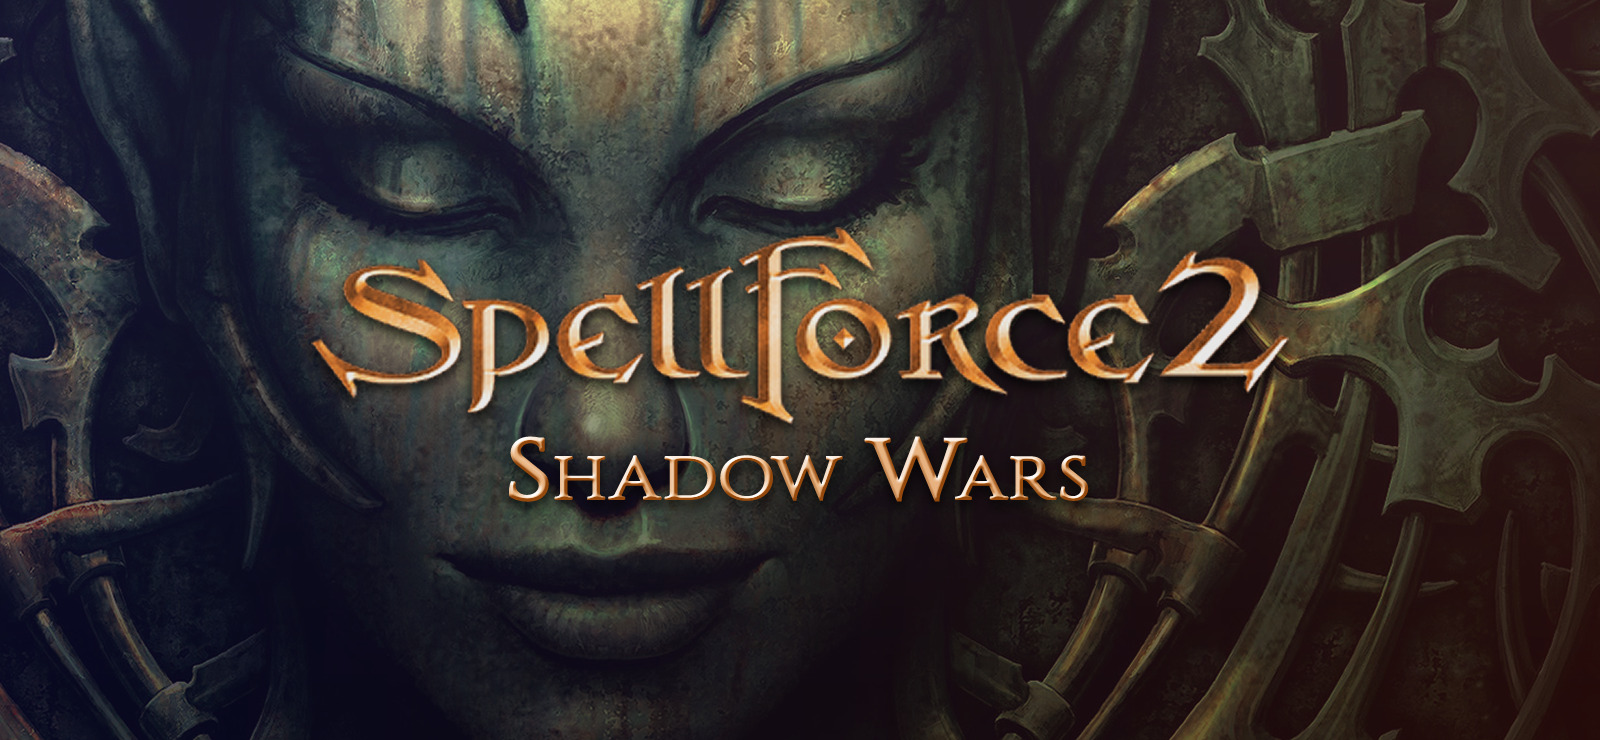 spellforce 2 shadow wars cheats not working